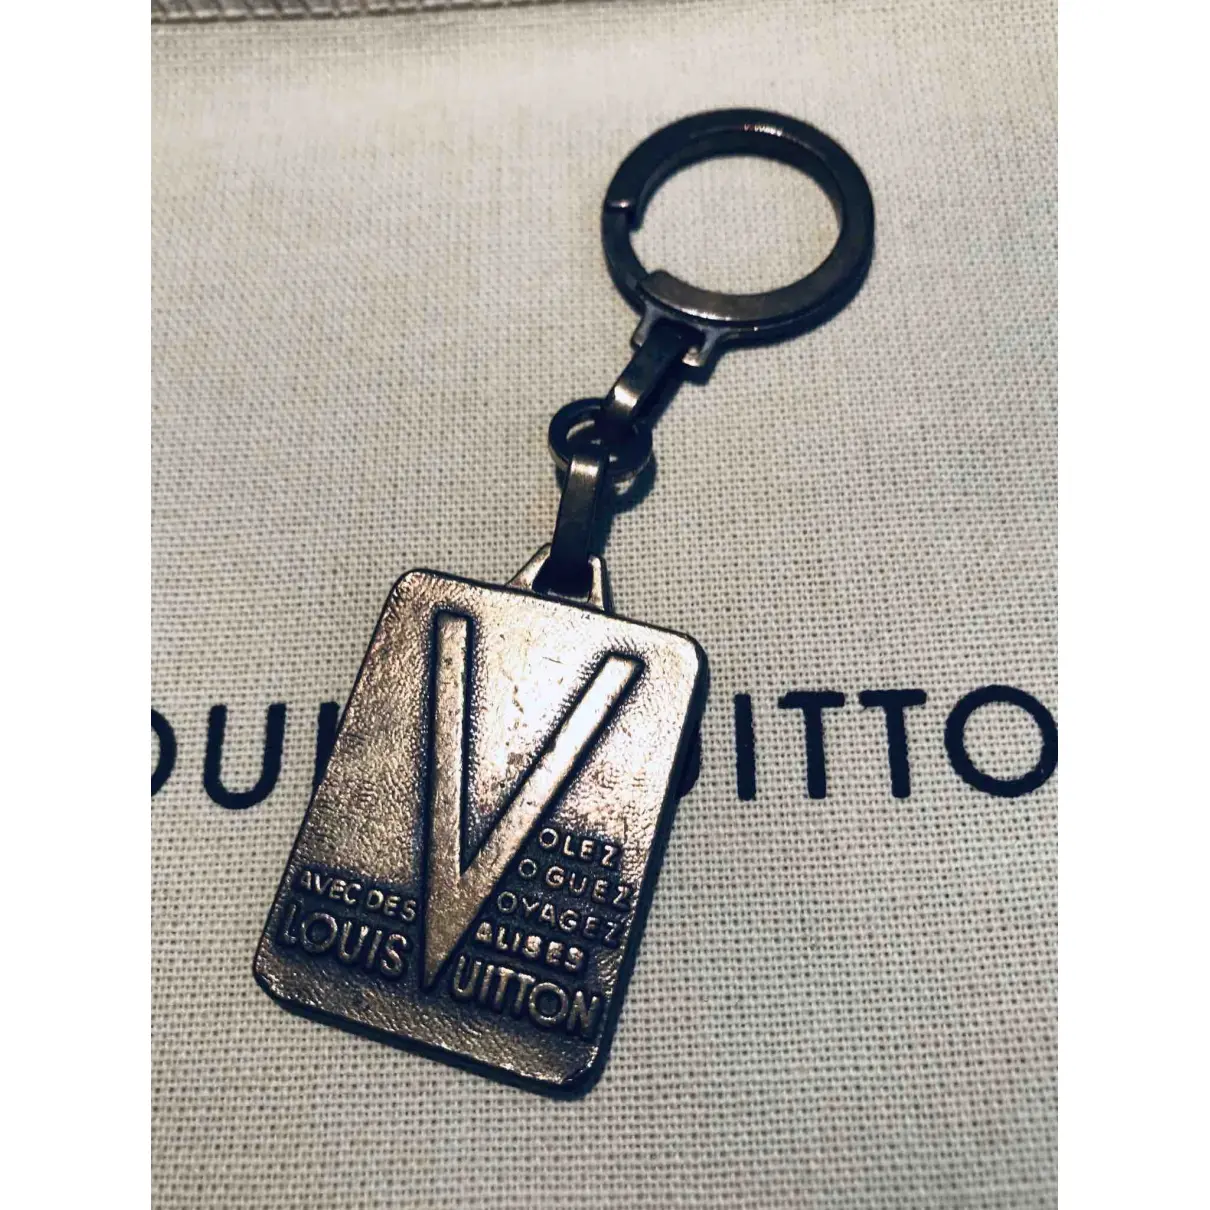 Buy Louis Vuitton Bag charm online